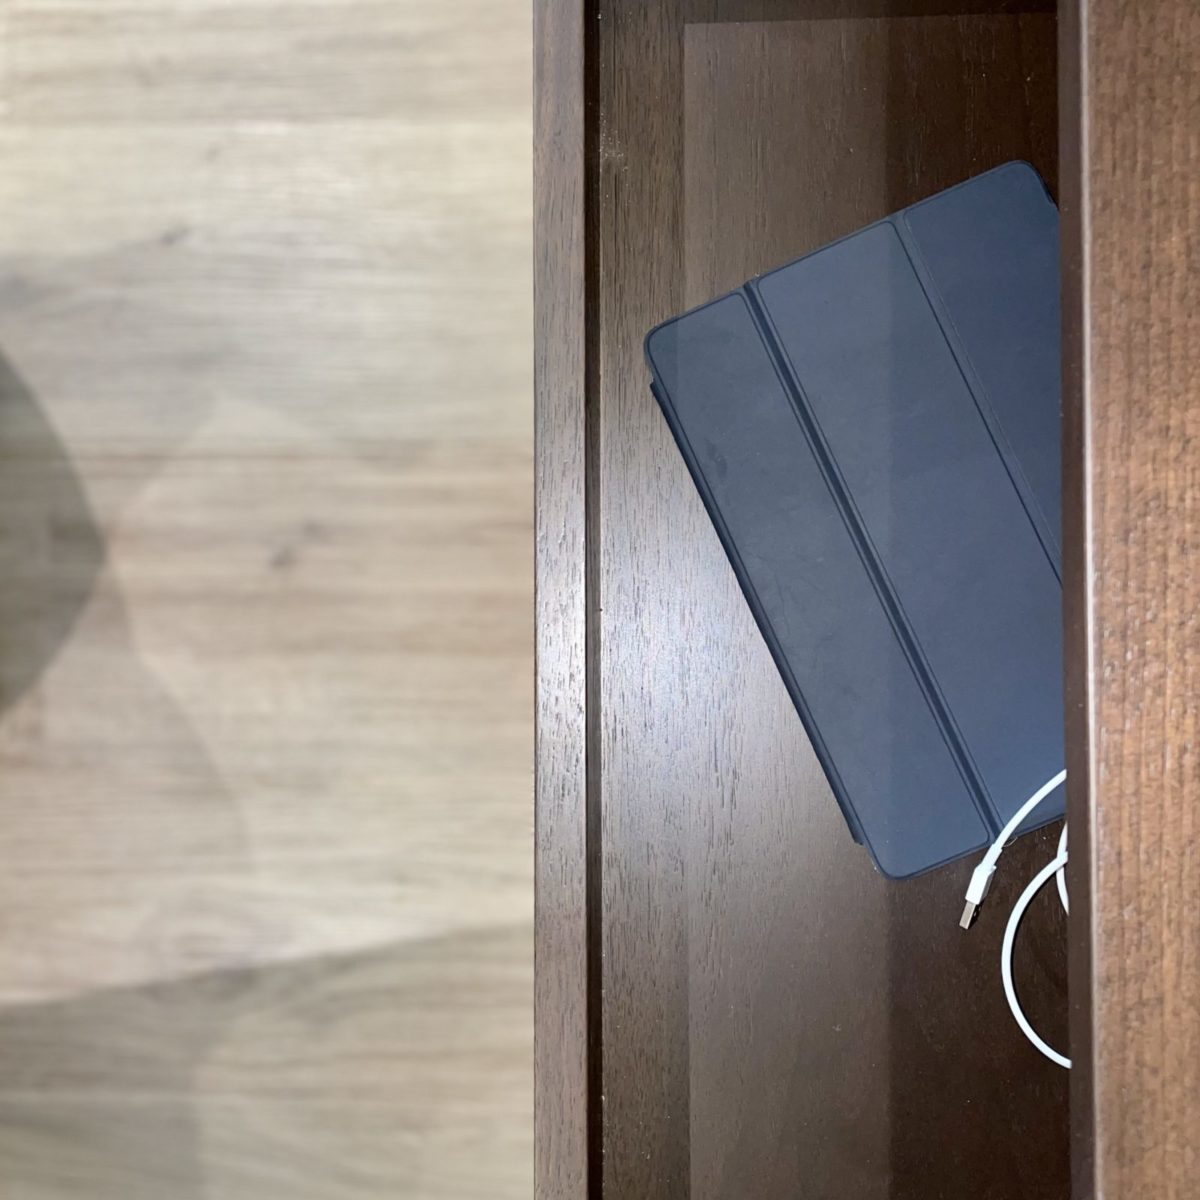 Docking-Drawer-open-door-to-reveal-ipad-charging